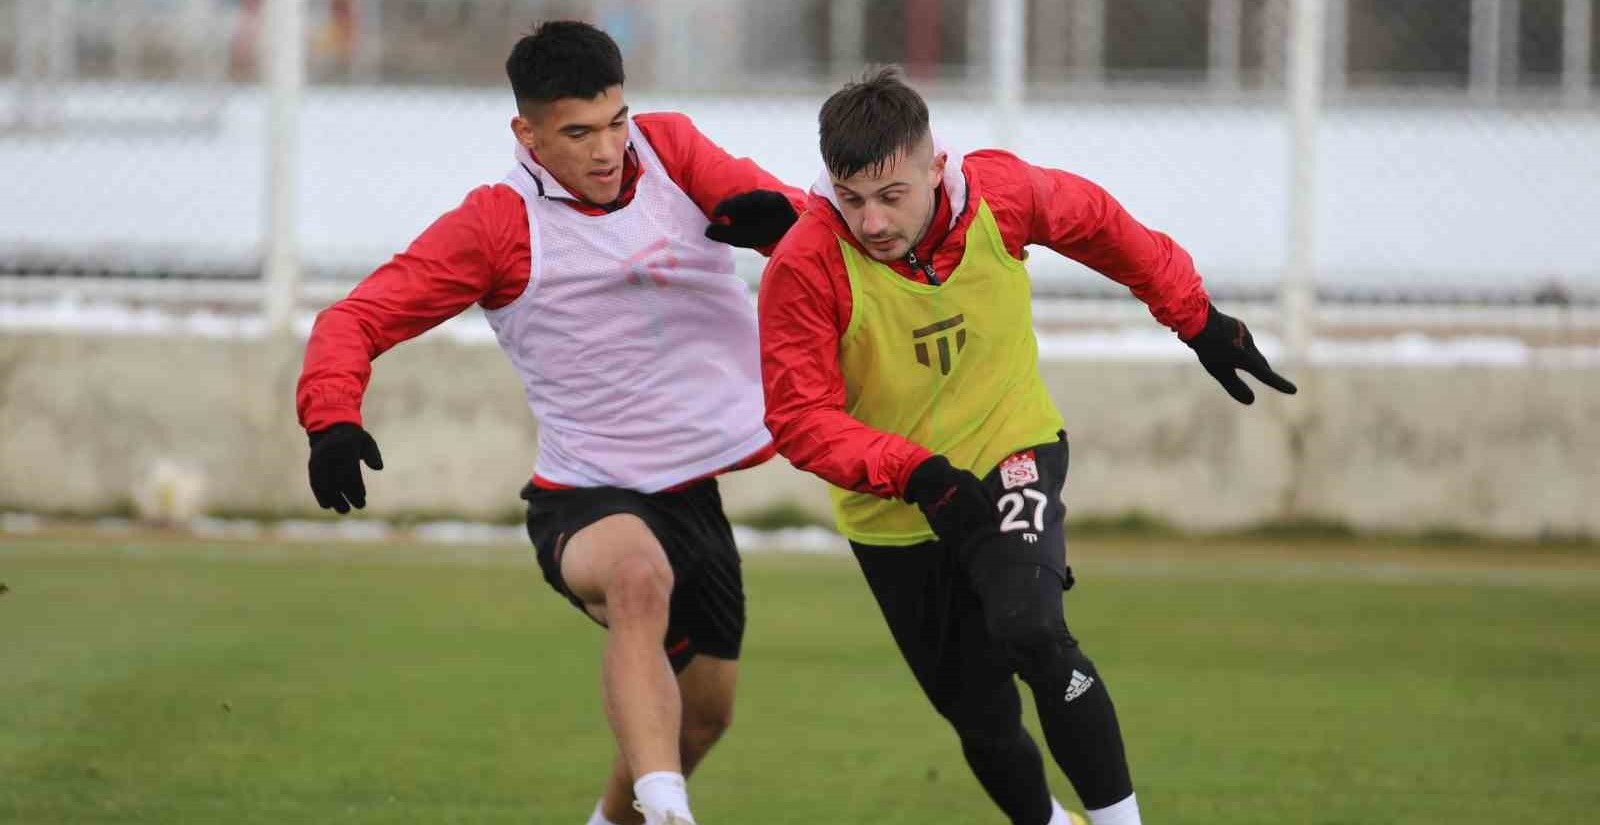 Sivassporun yeni transferi Saiz ilk idmana çıktı